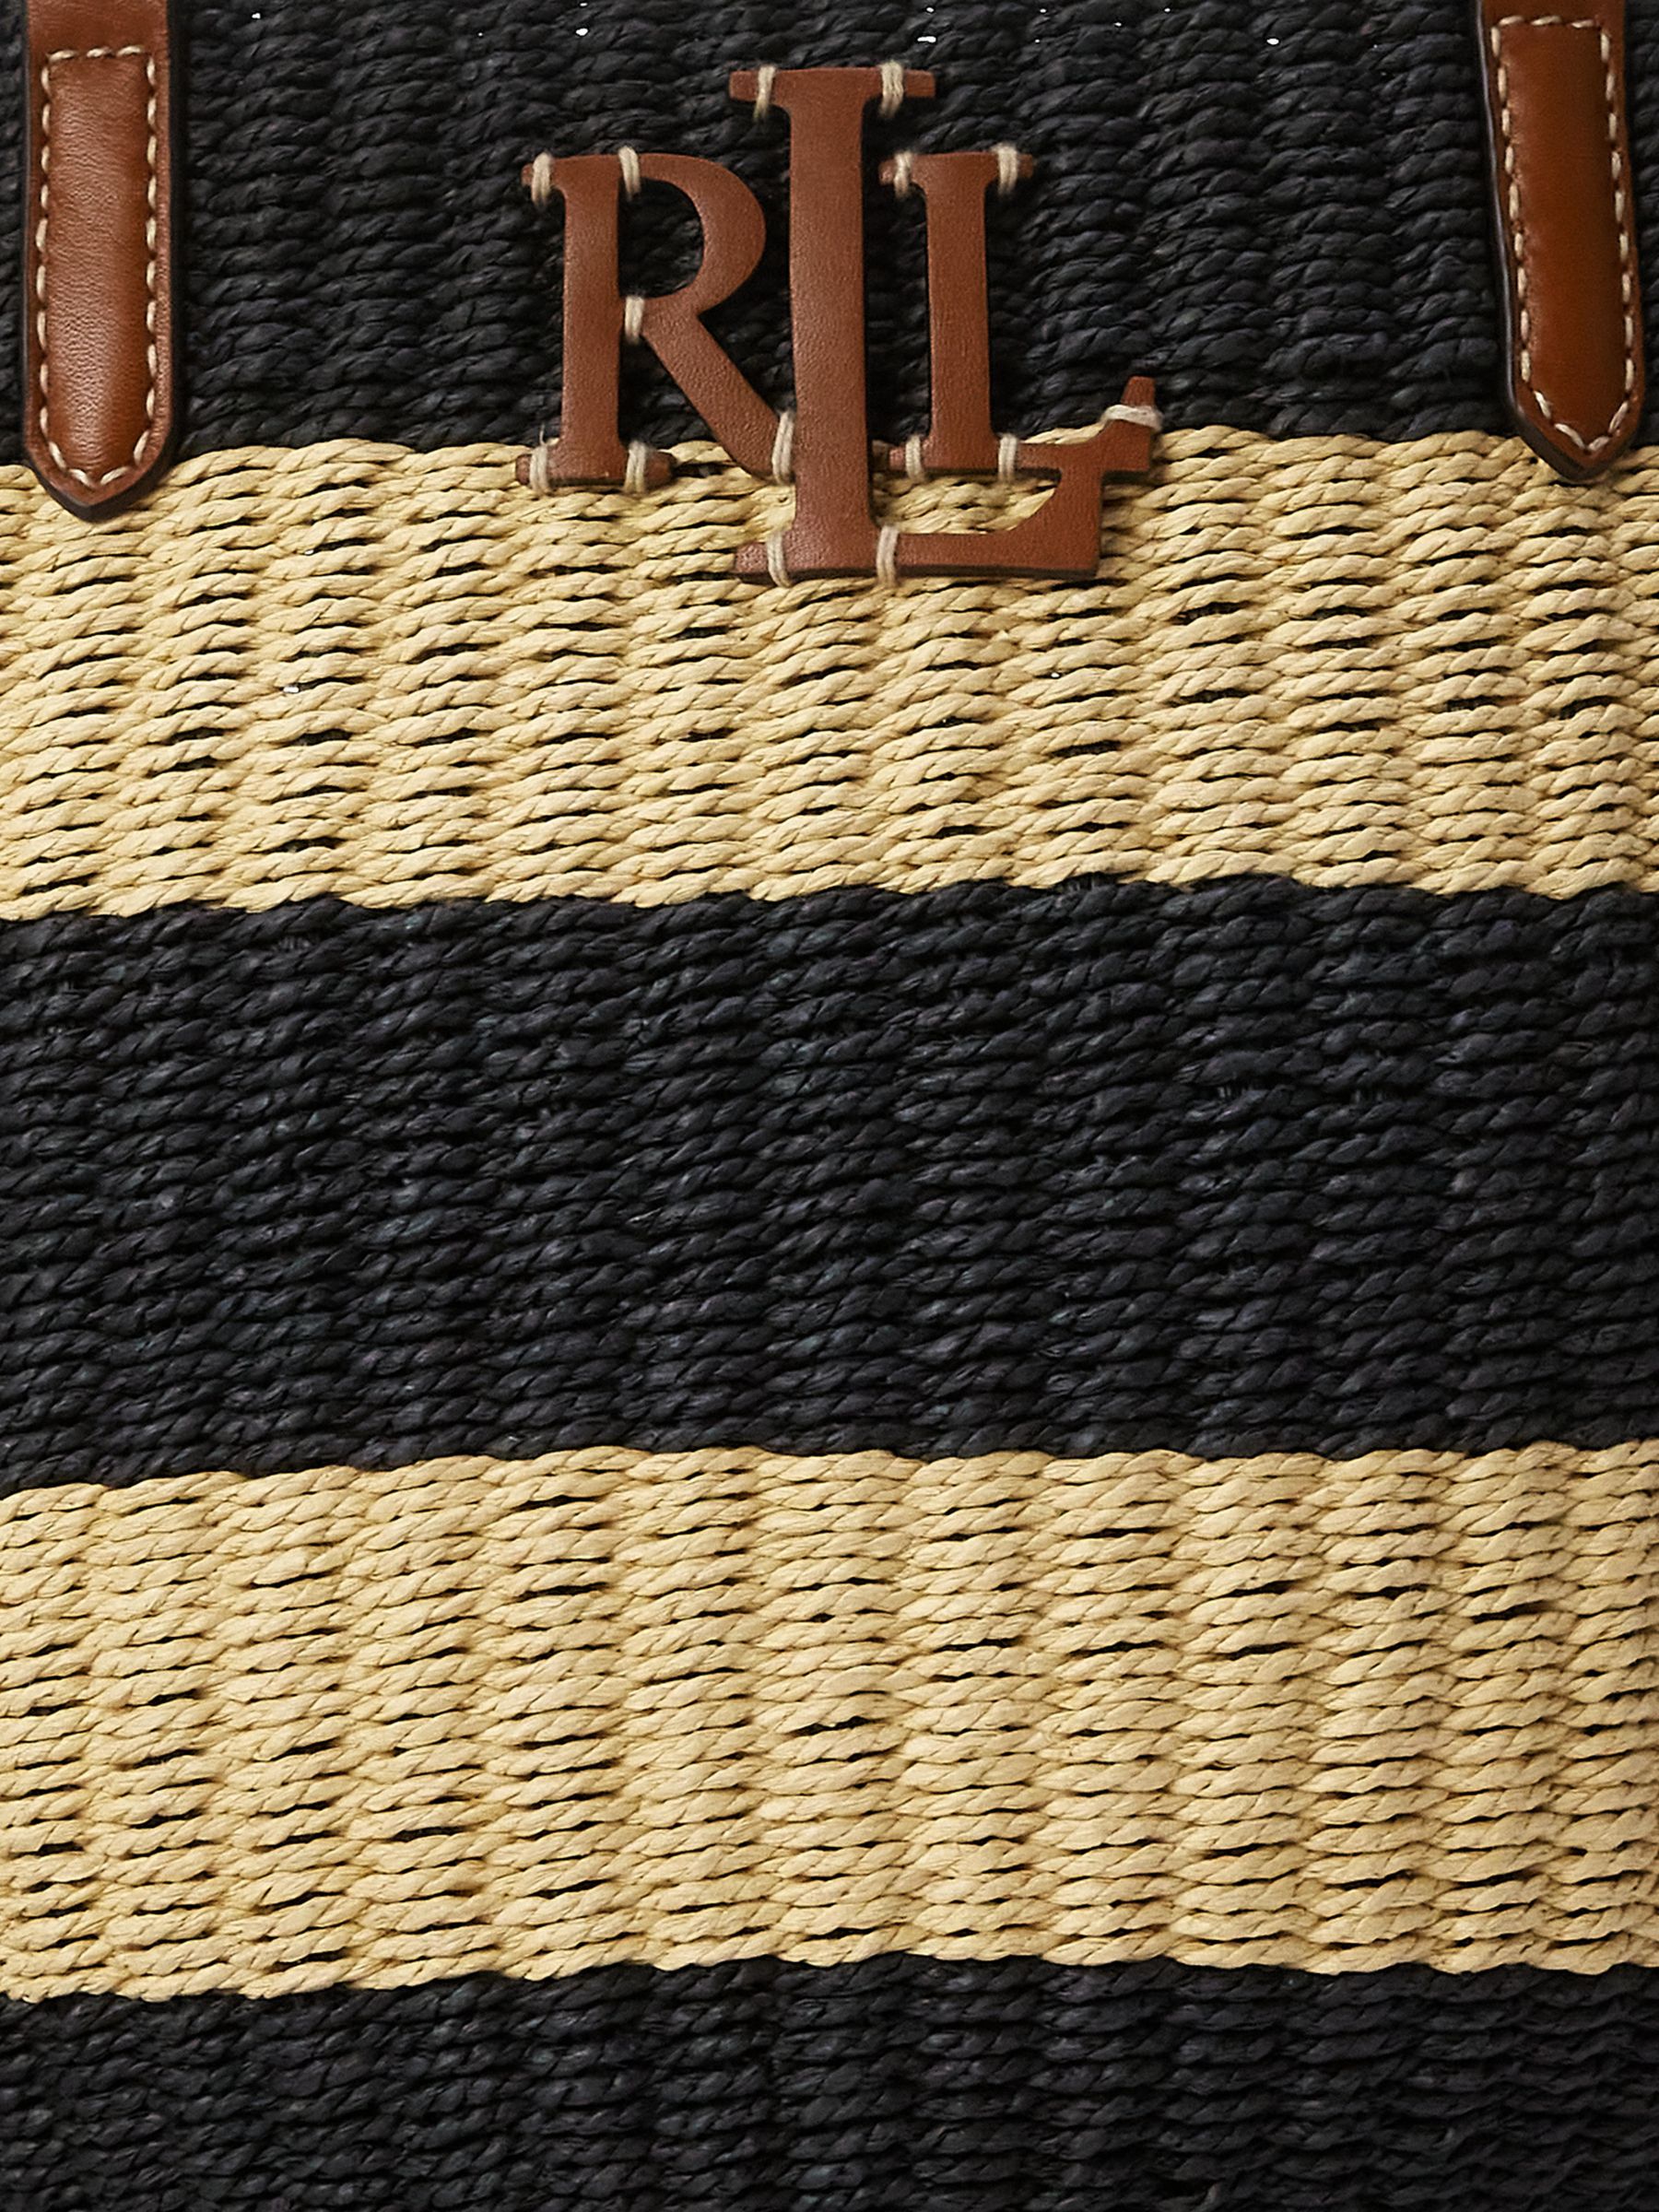 Buy Lauren Ralph Lauren Hartley Straw Bucket Bag, Natural/Black Online at johnlewis.com